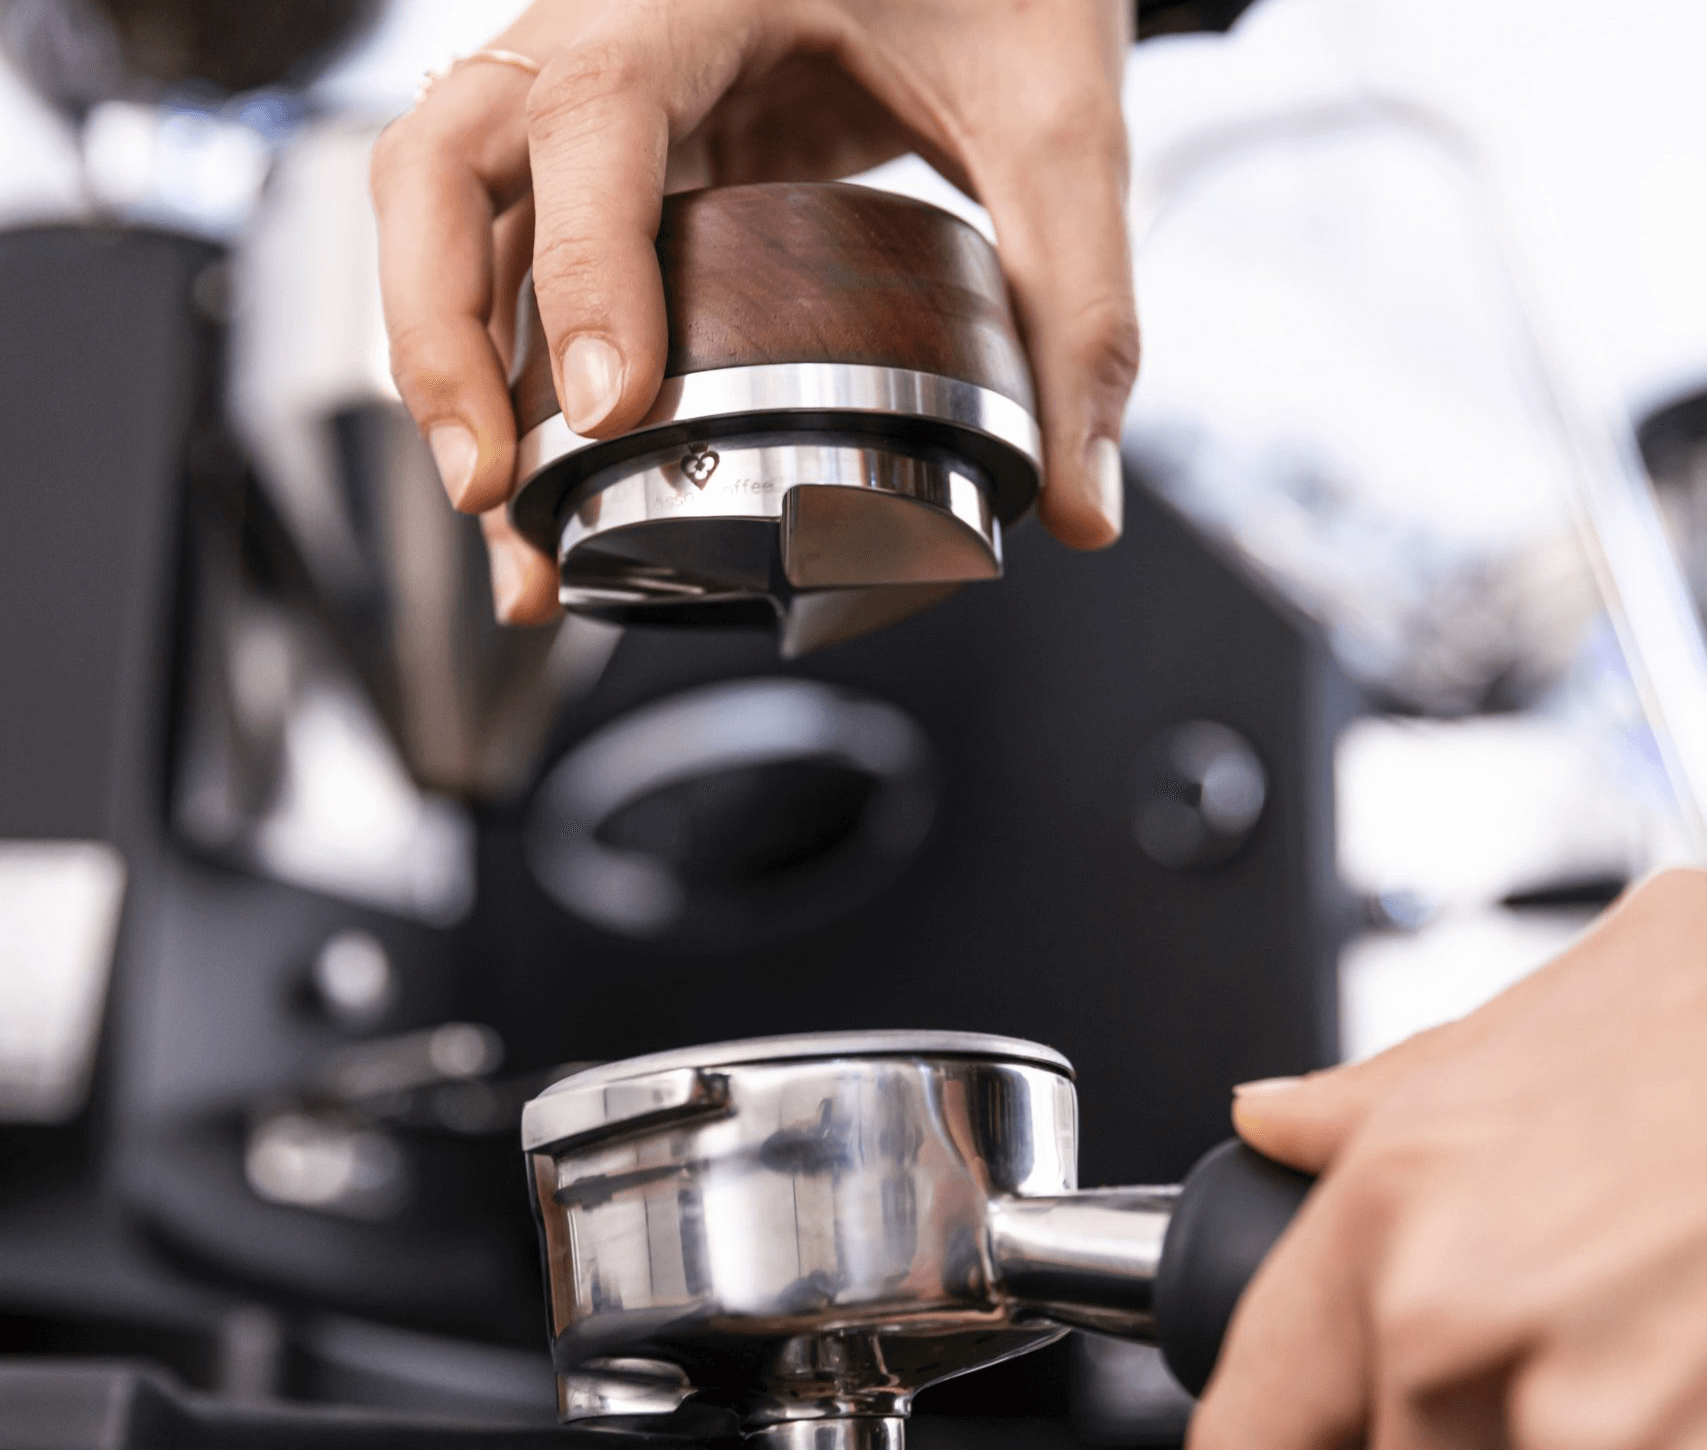 How to Find Consistency in Home Espresso - La Marzocco Home